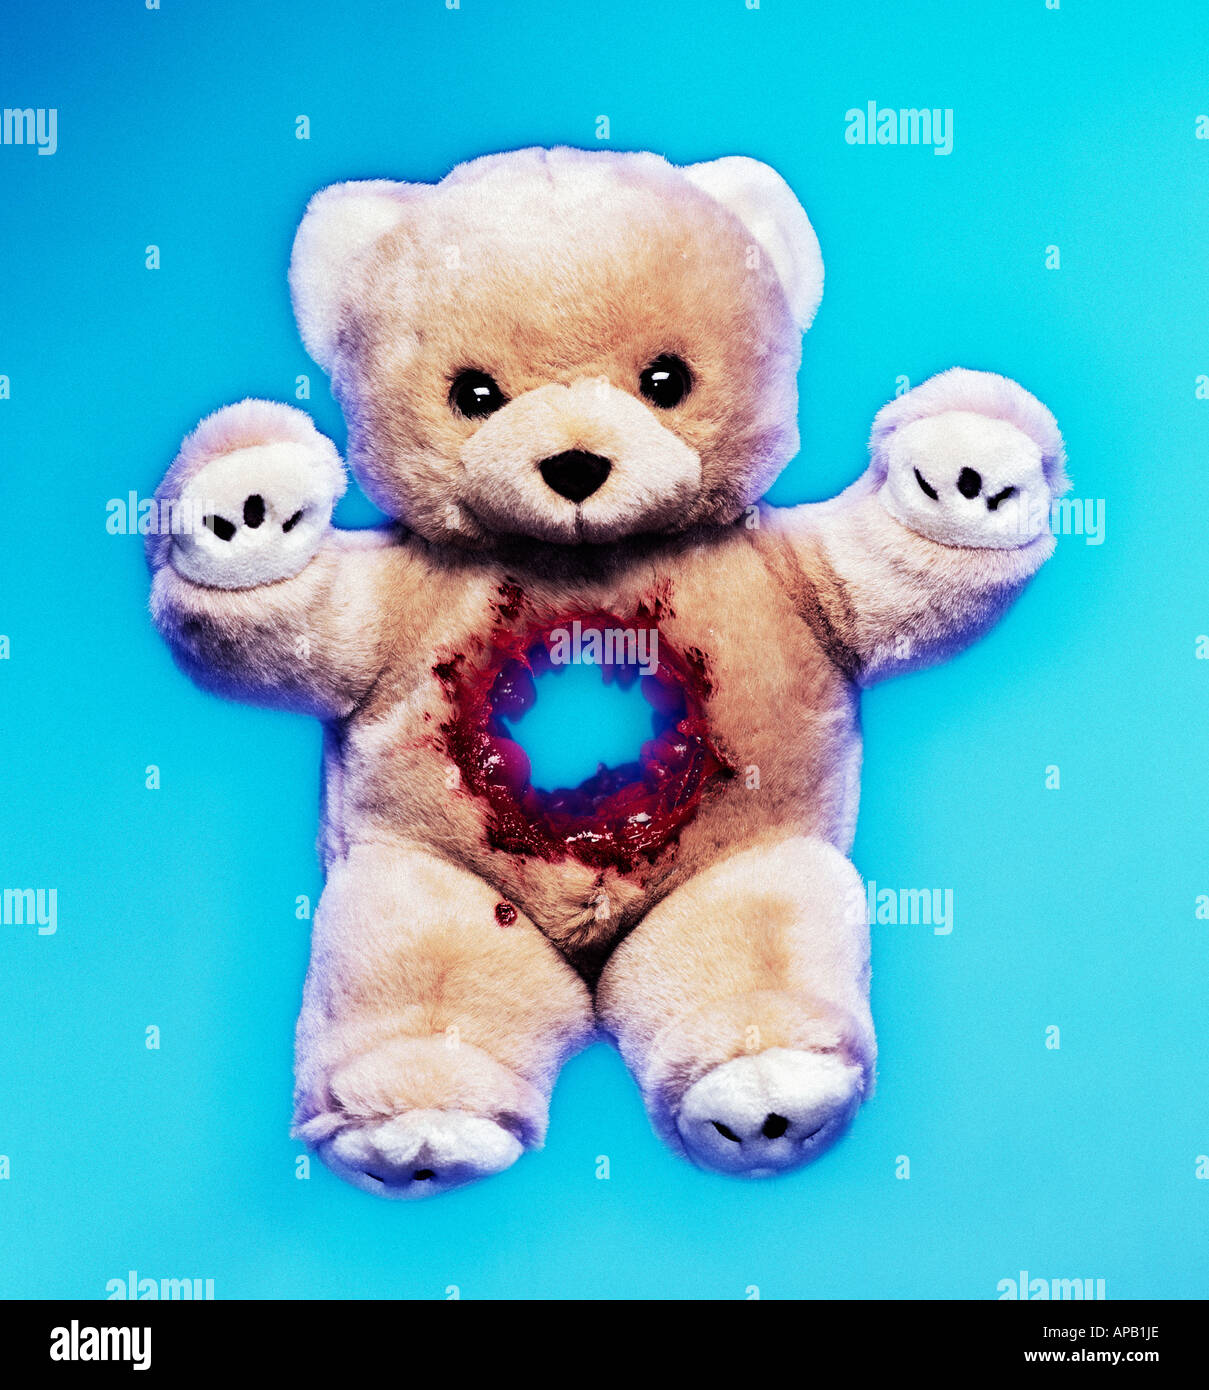 Teddybär mit einem Gewehr erschossen Wunde Stockfoto